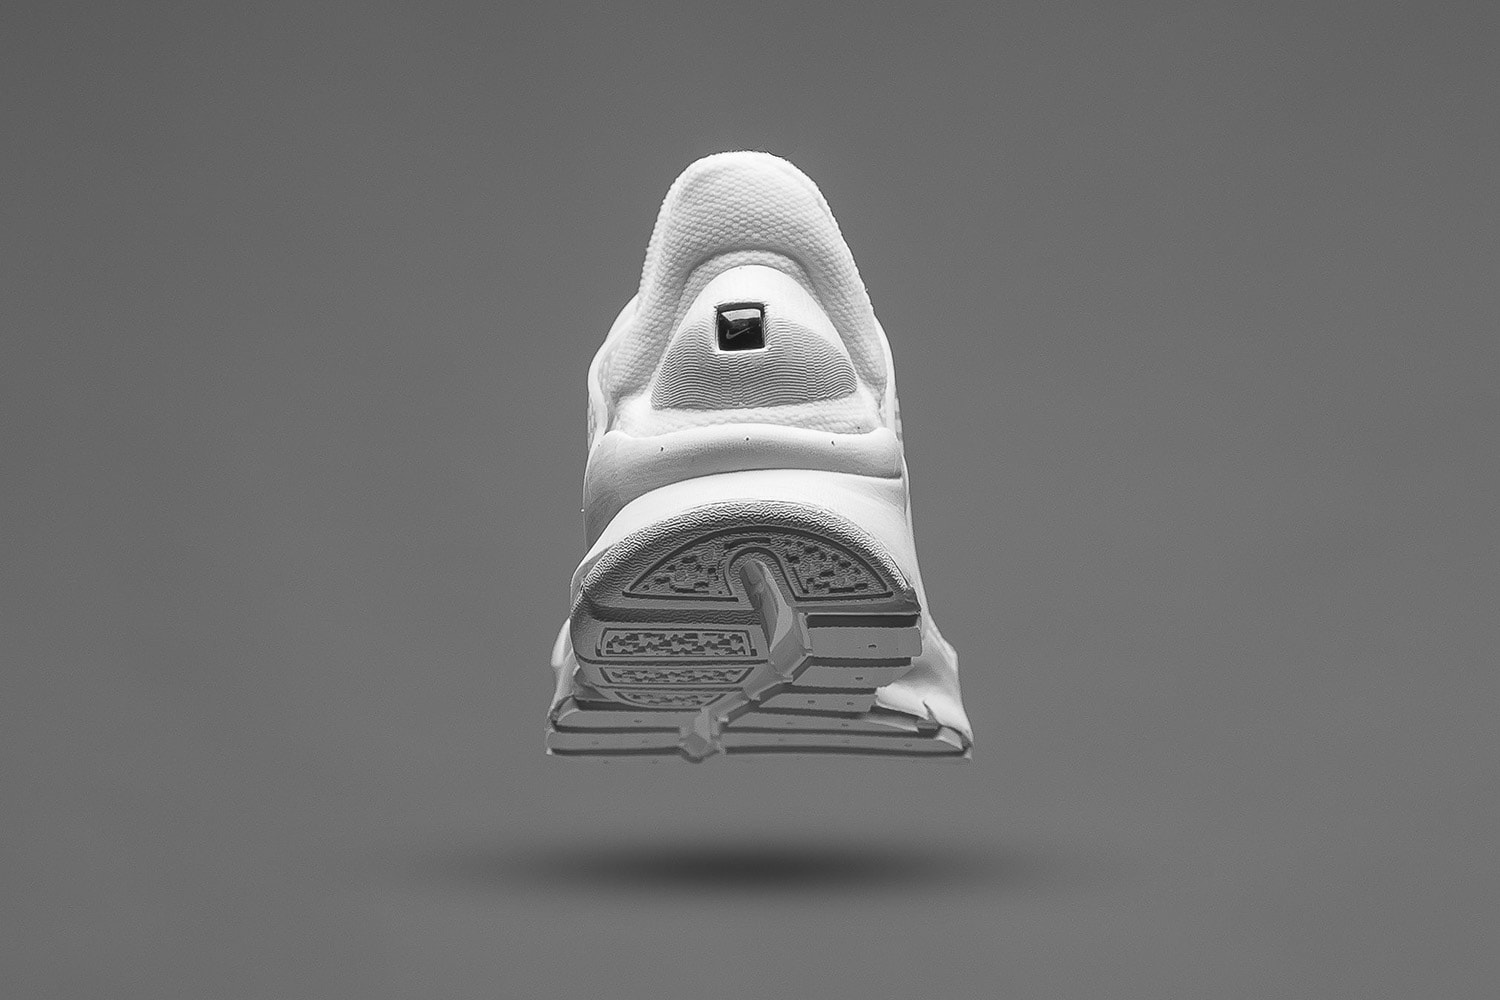 近賞 Nike Sock Dart KJCRD 全新配色設計「Triple White」